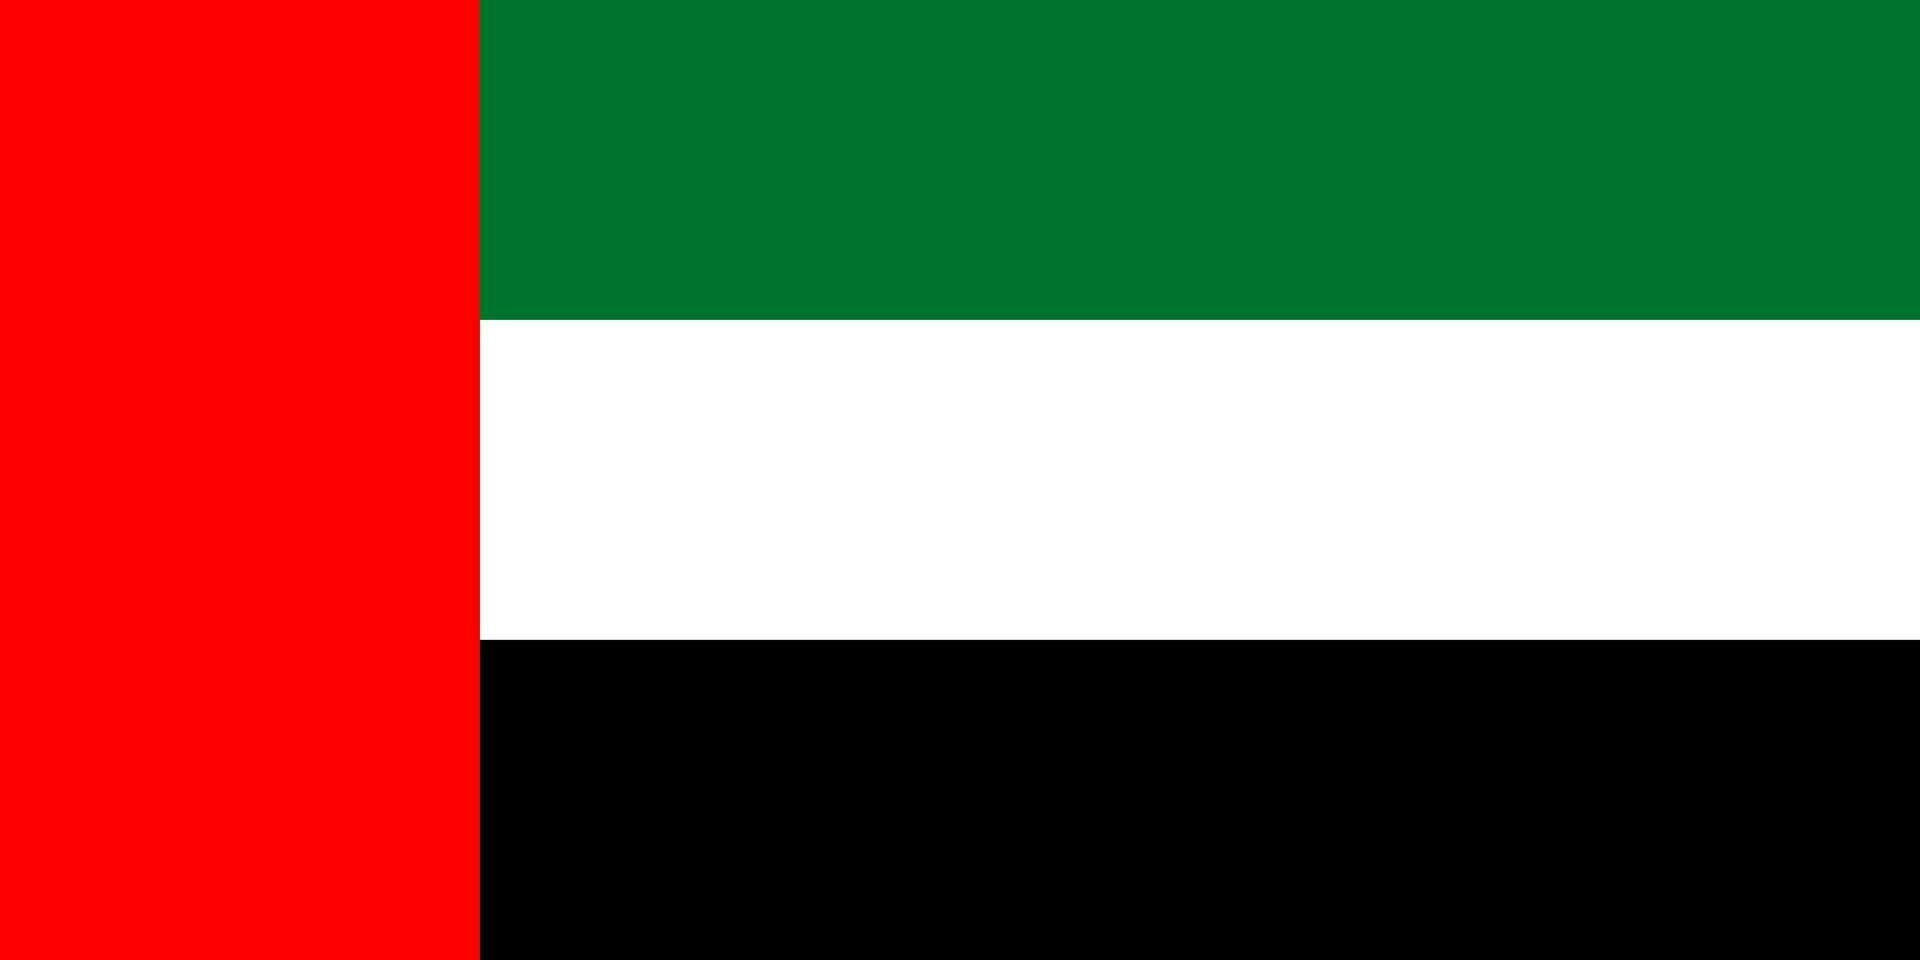 bandeira dos emirados árabes unidos, cores oficiais e proporção. ilustração vetorial. vetor